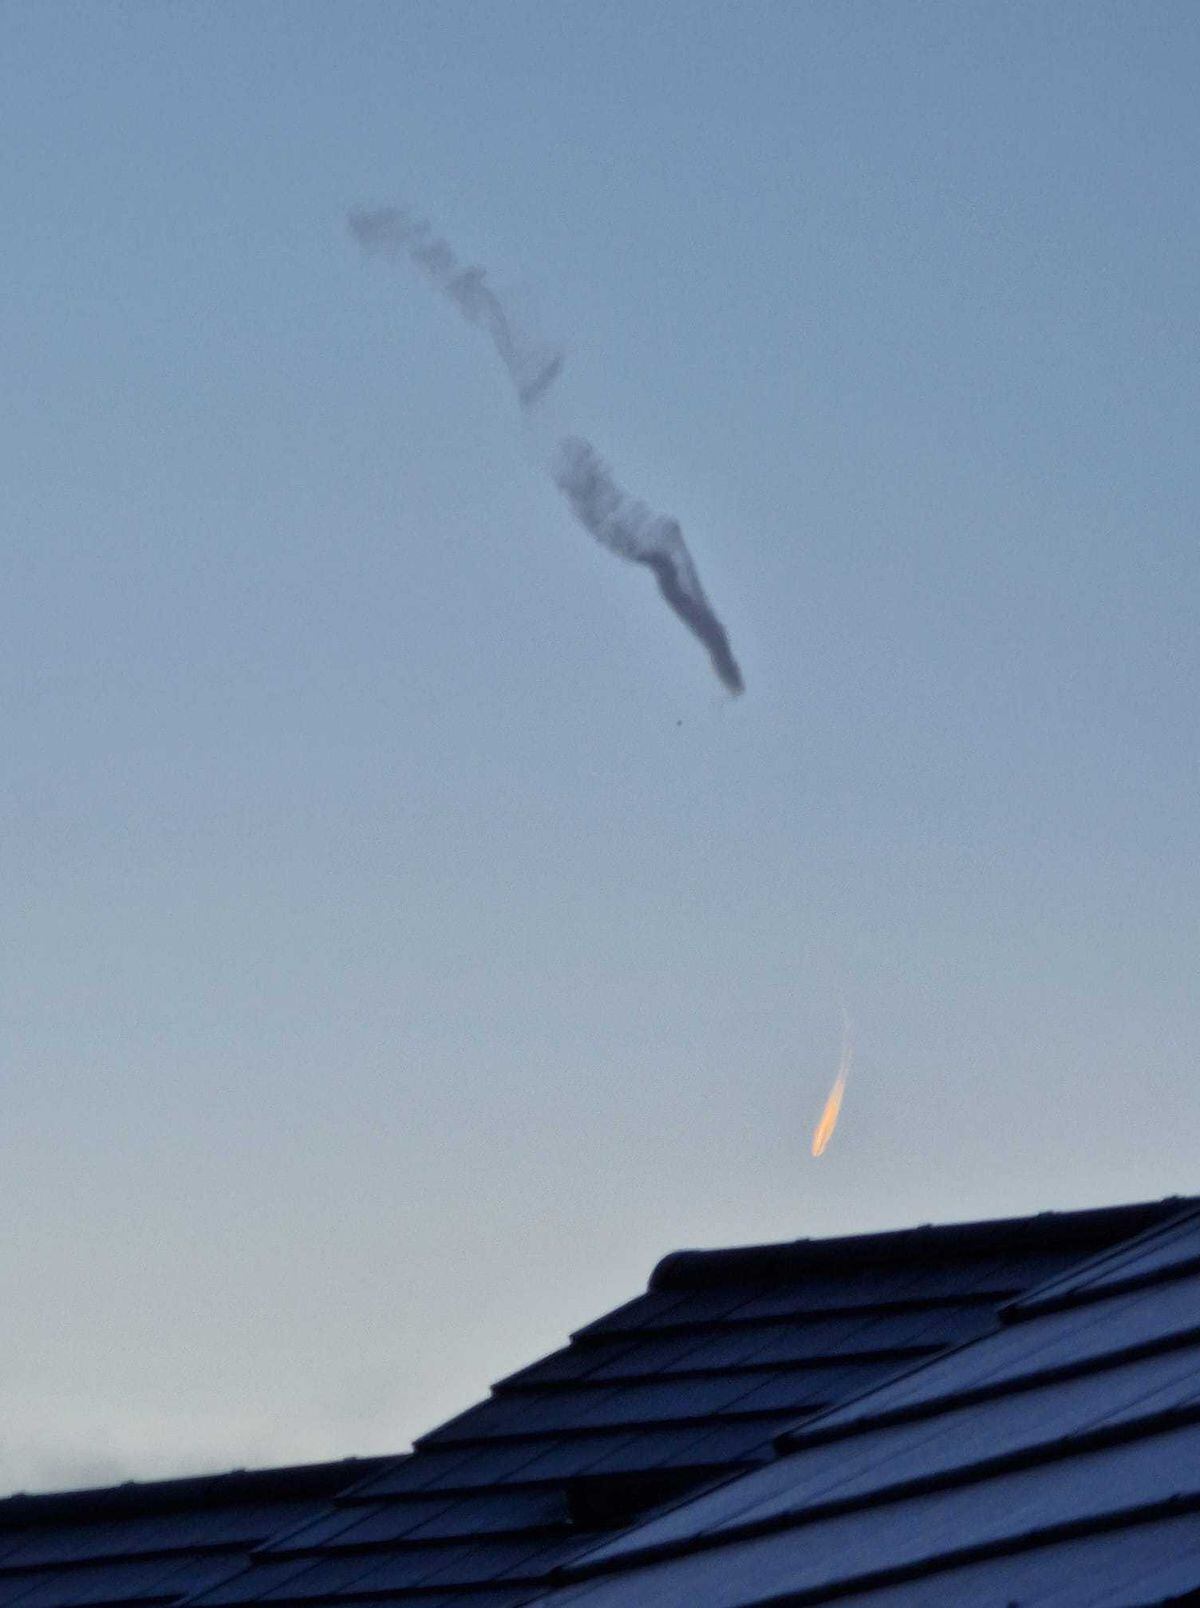 This black streak across the sky has inspired many theories online. Photo: Lauren Garratt.